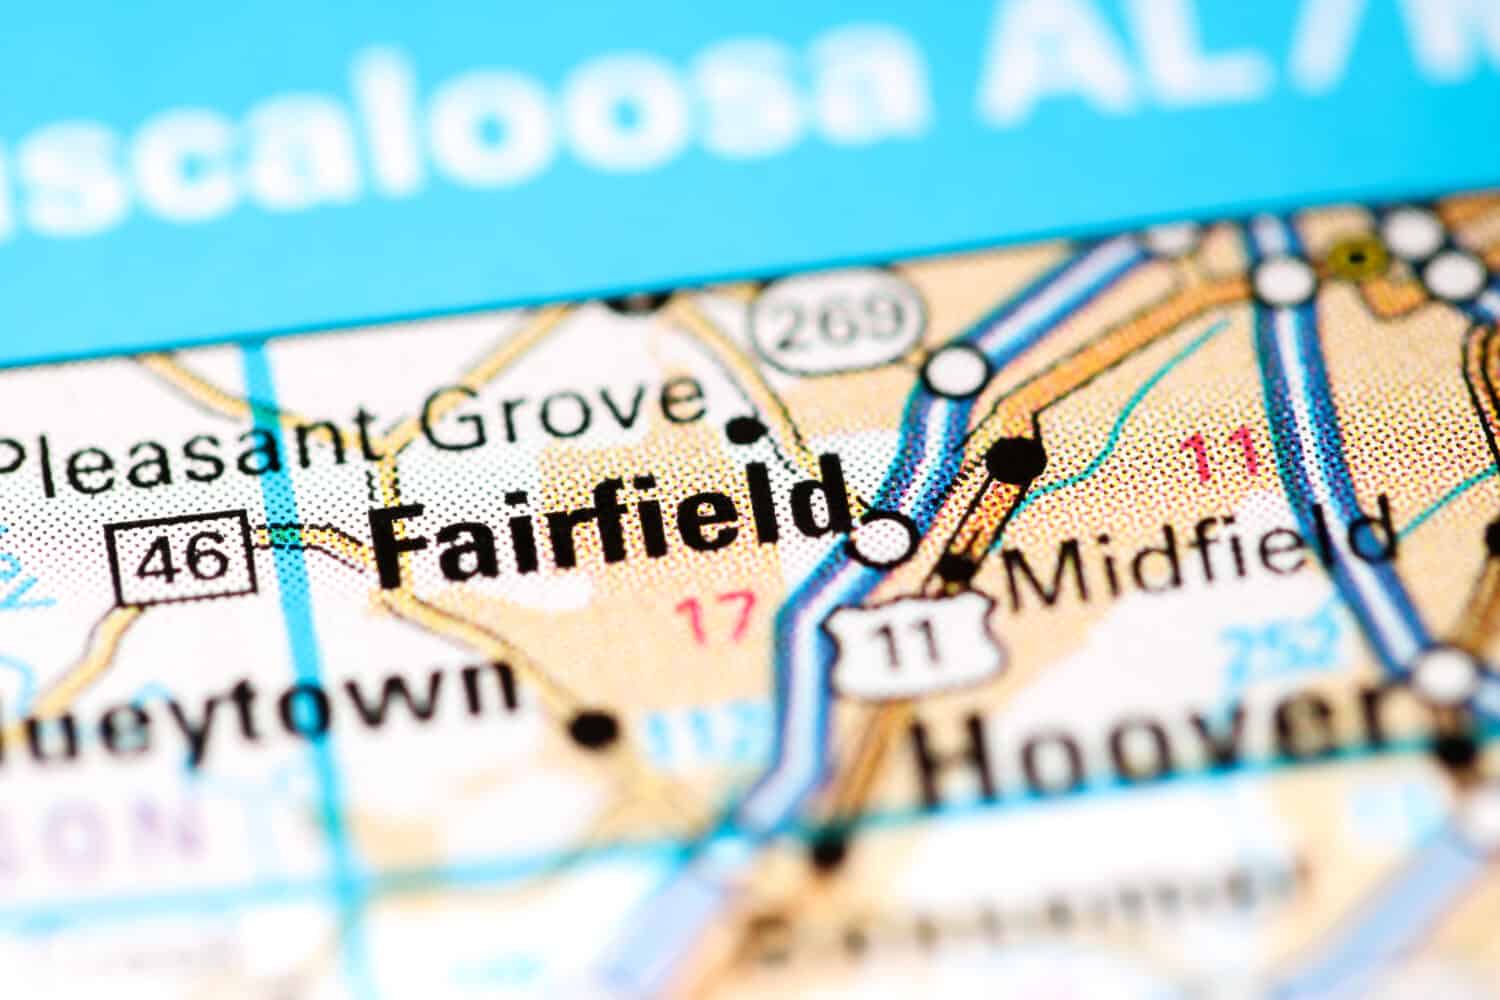 Fairfield. Alabama. USA on a map